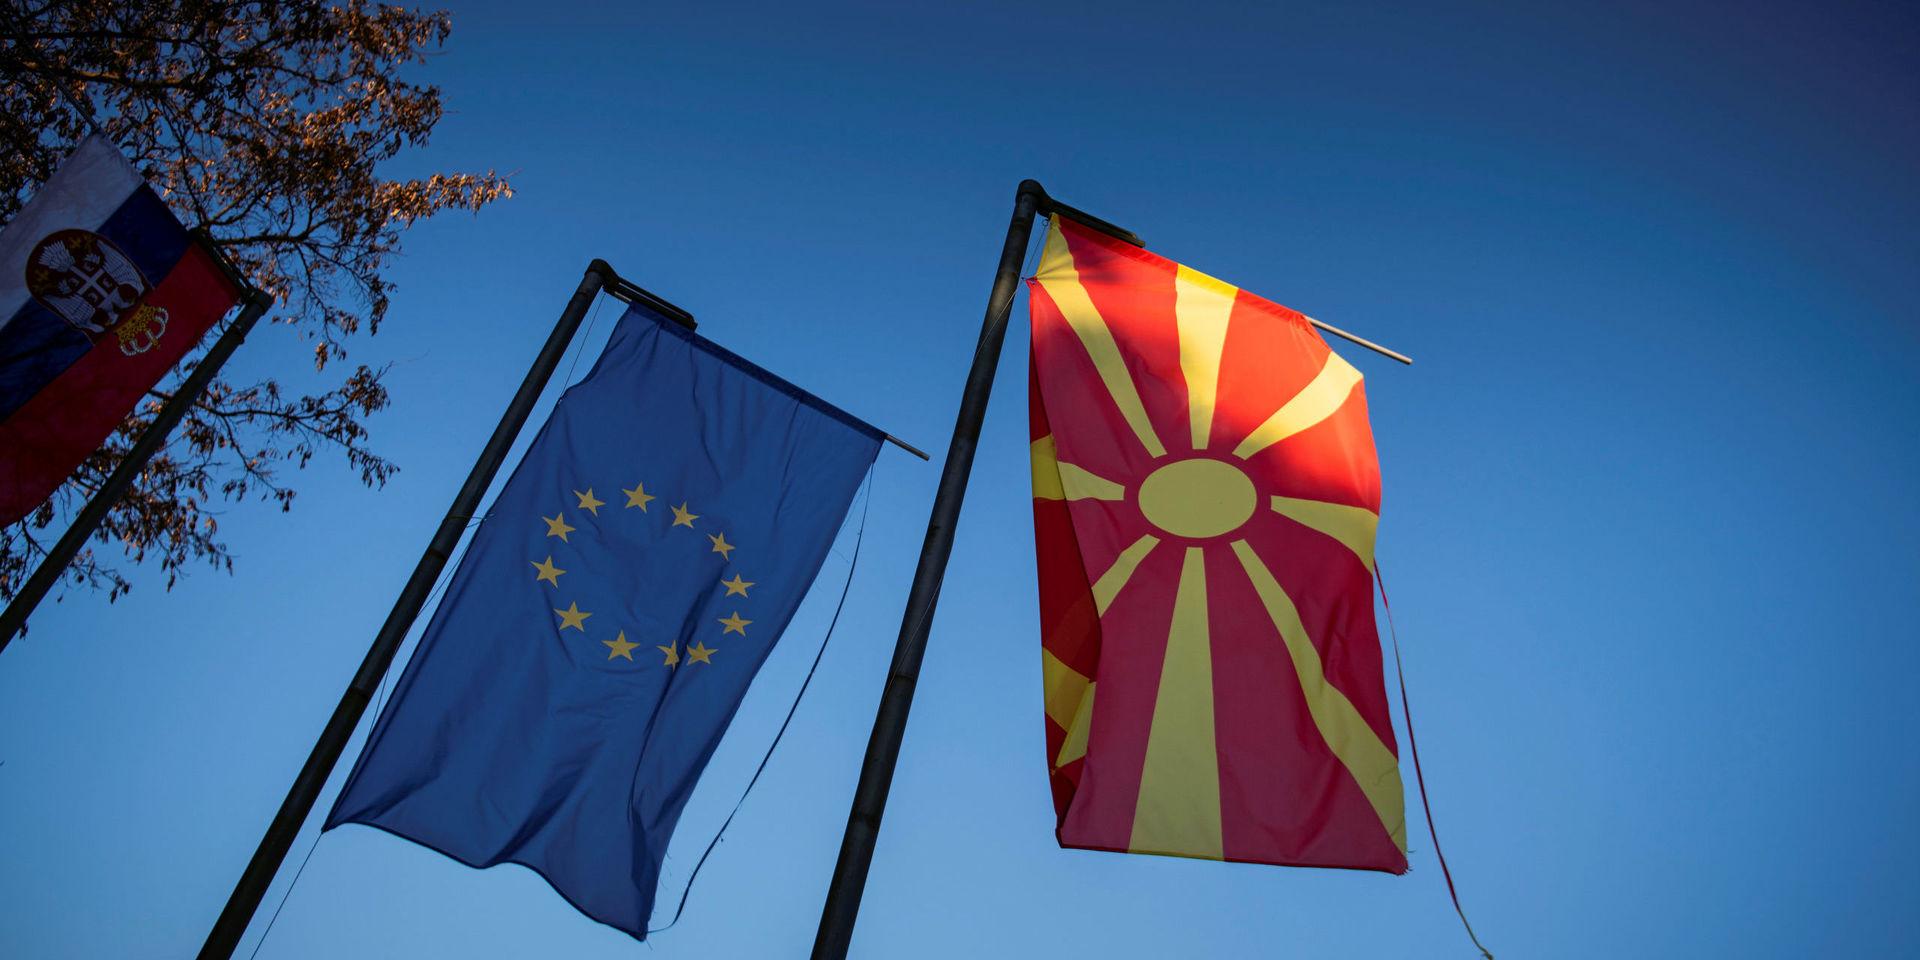 EU-flaggan och Makedoniens flagga, en vanlig syn i Makedonien.